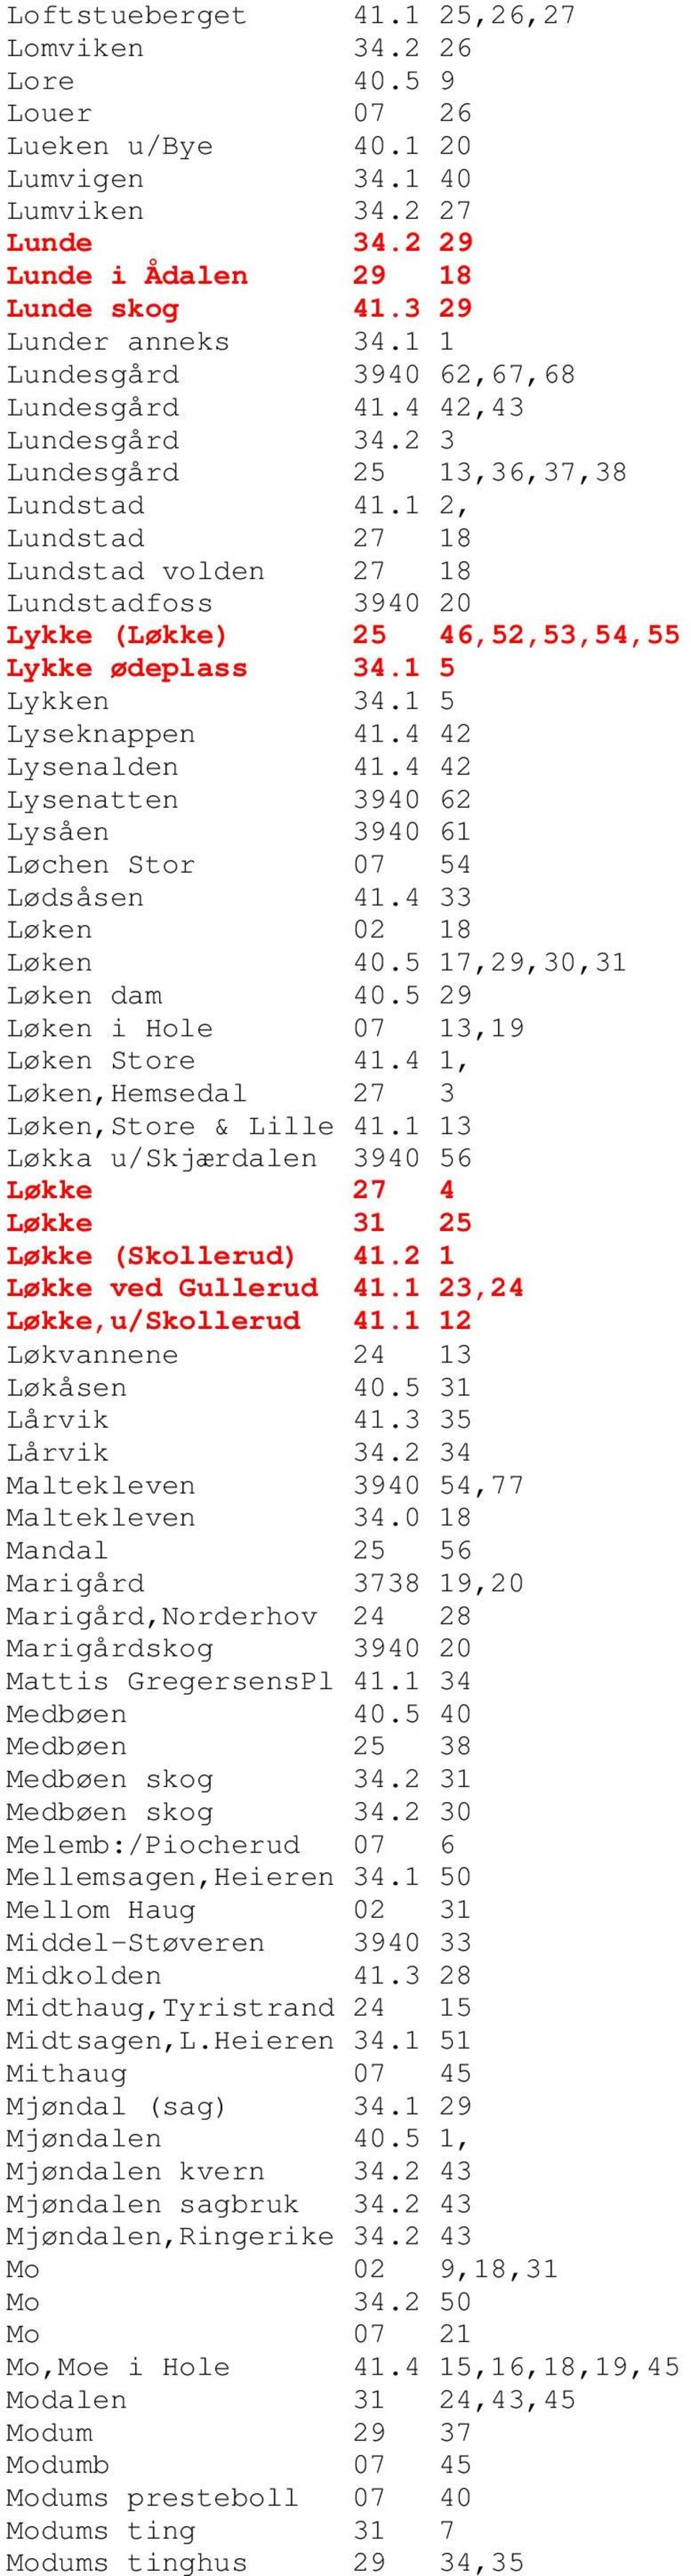 1 2, Lundstad 27 18 Lundstad volden 27 18 Lundstadfoss 3940 20 Lykke (Løkke) 25 46,52,53,54,55 Lykke ødeplass 34.1 5 Lykken 34.1 5 Lyseknappen 41.4 42 Lysenalden 41.